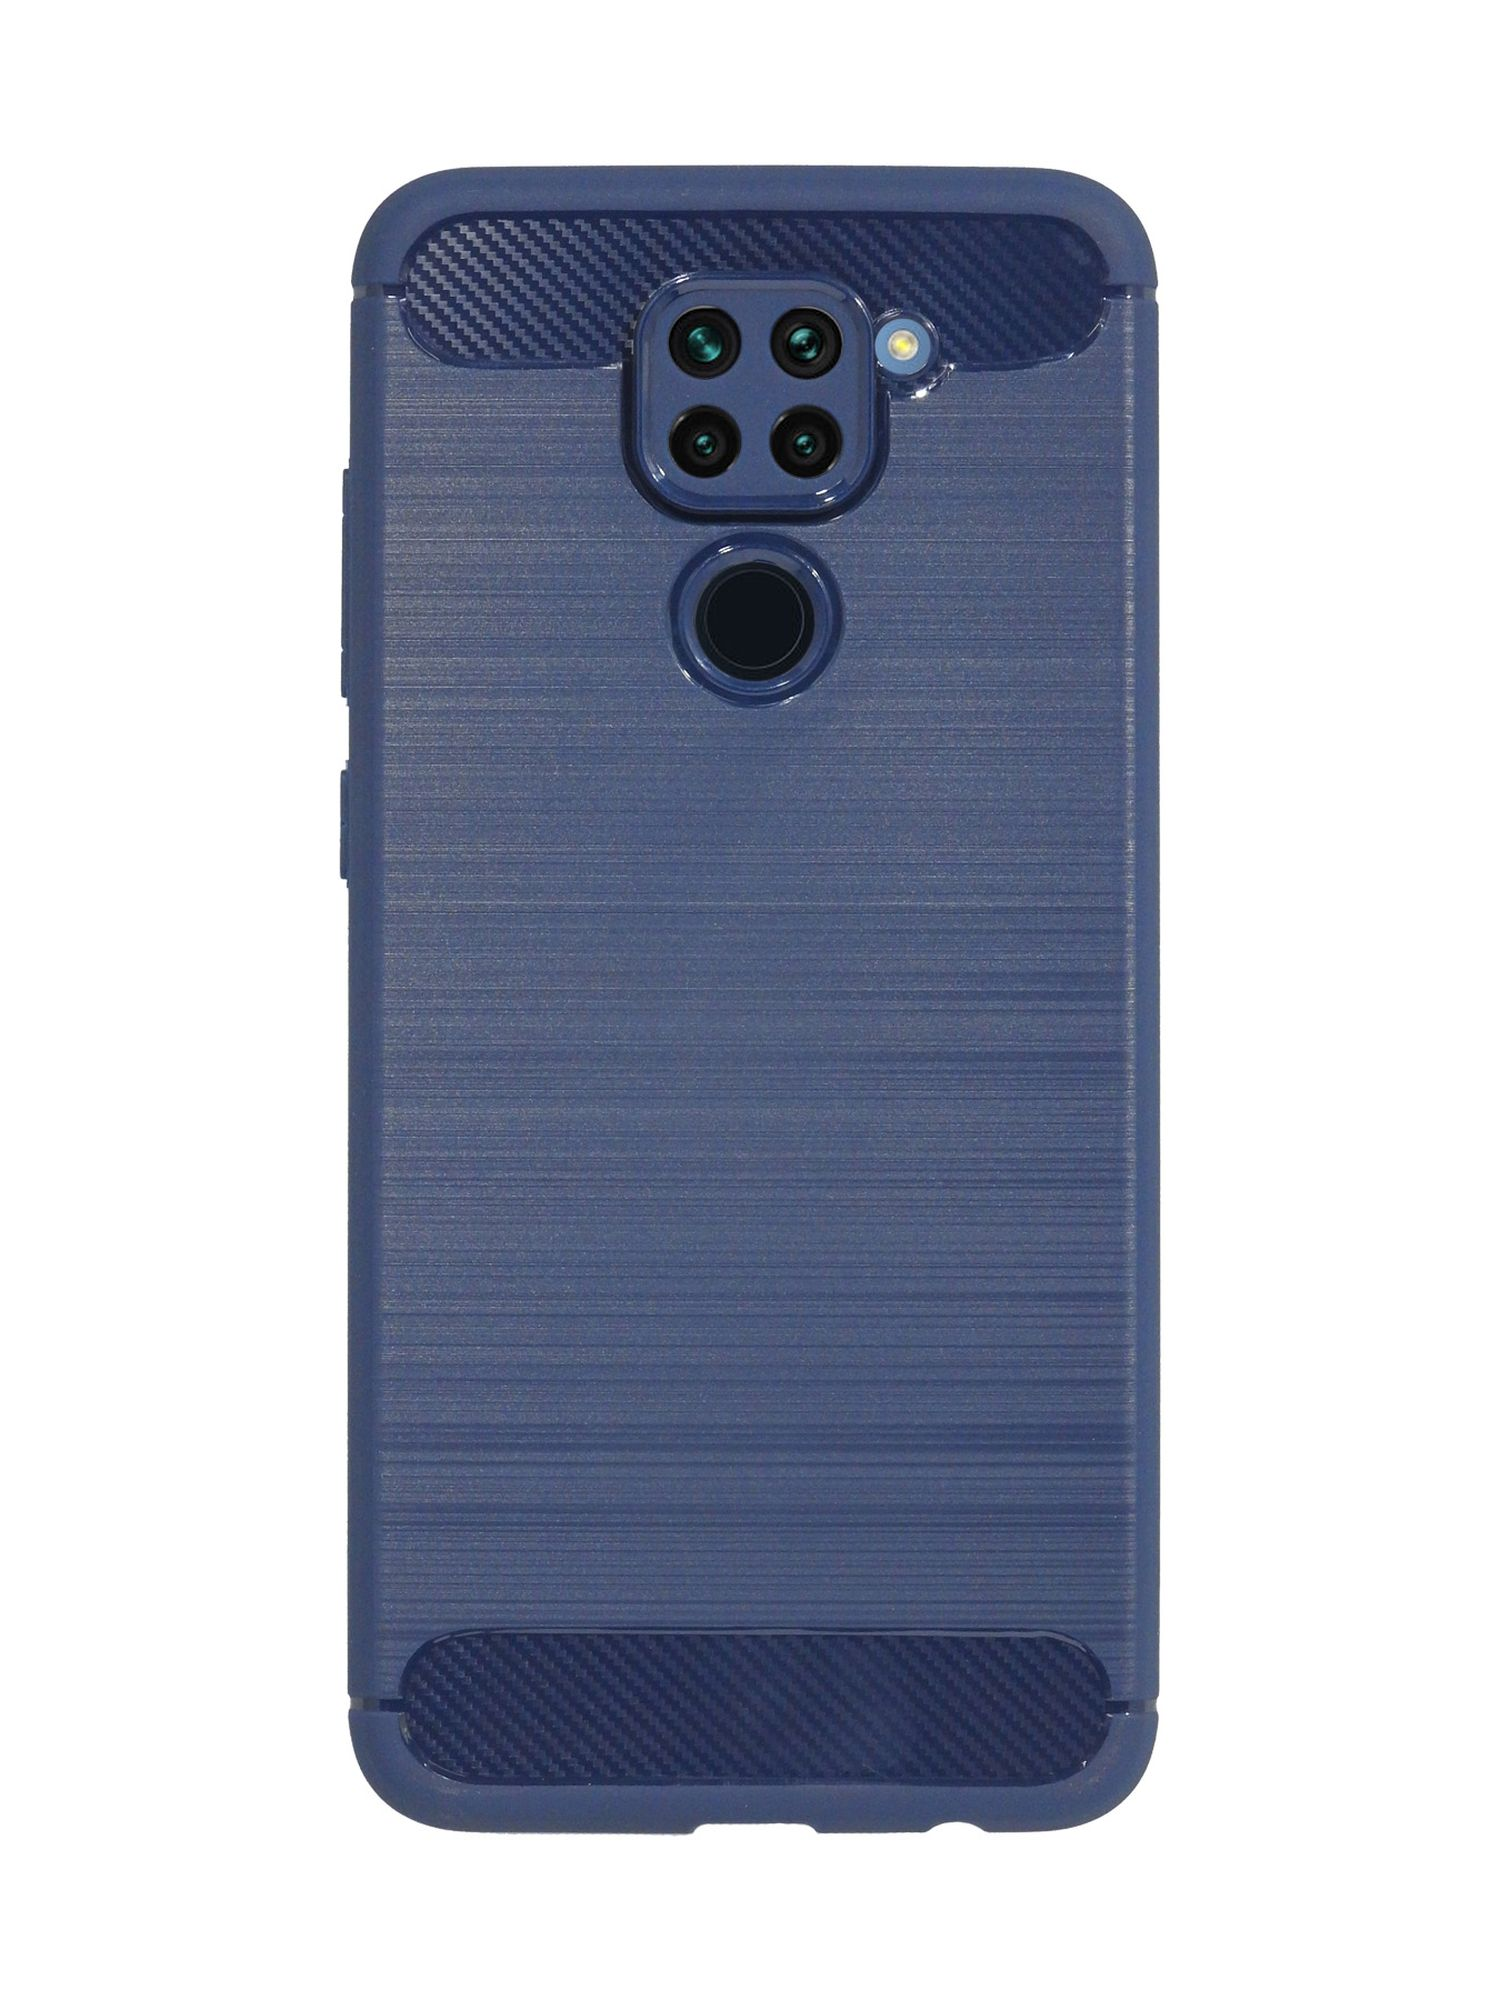 Bumper, Note COFI 9, Case, Redmi Carbon-Look Blau Xiaomi,